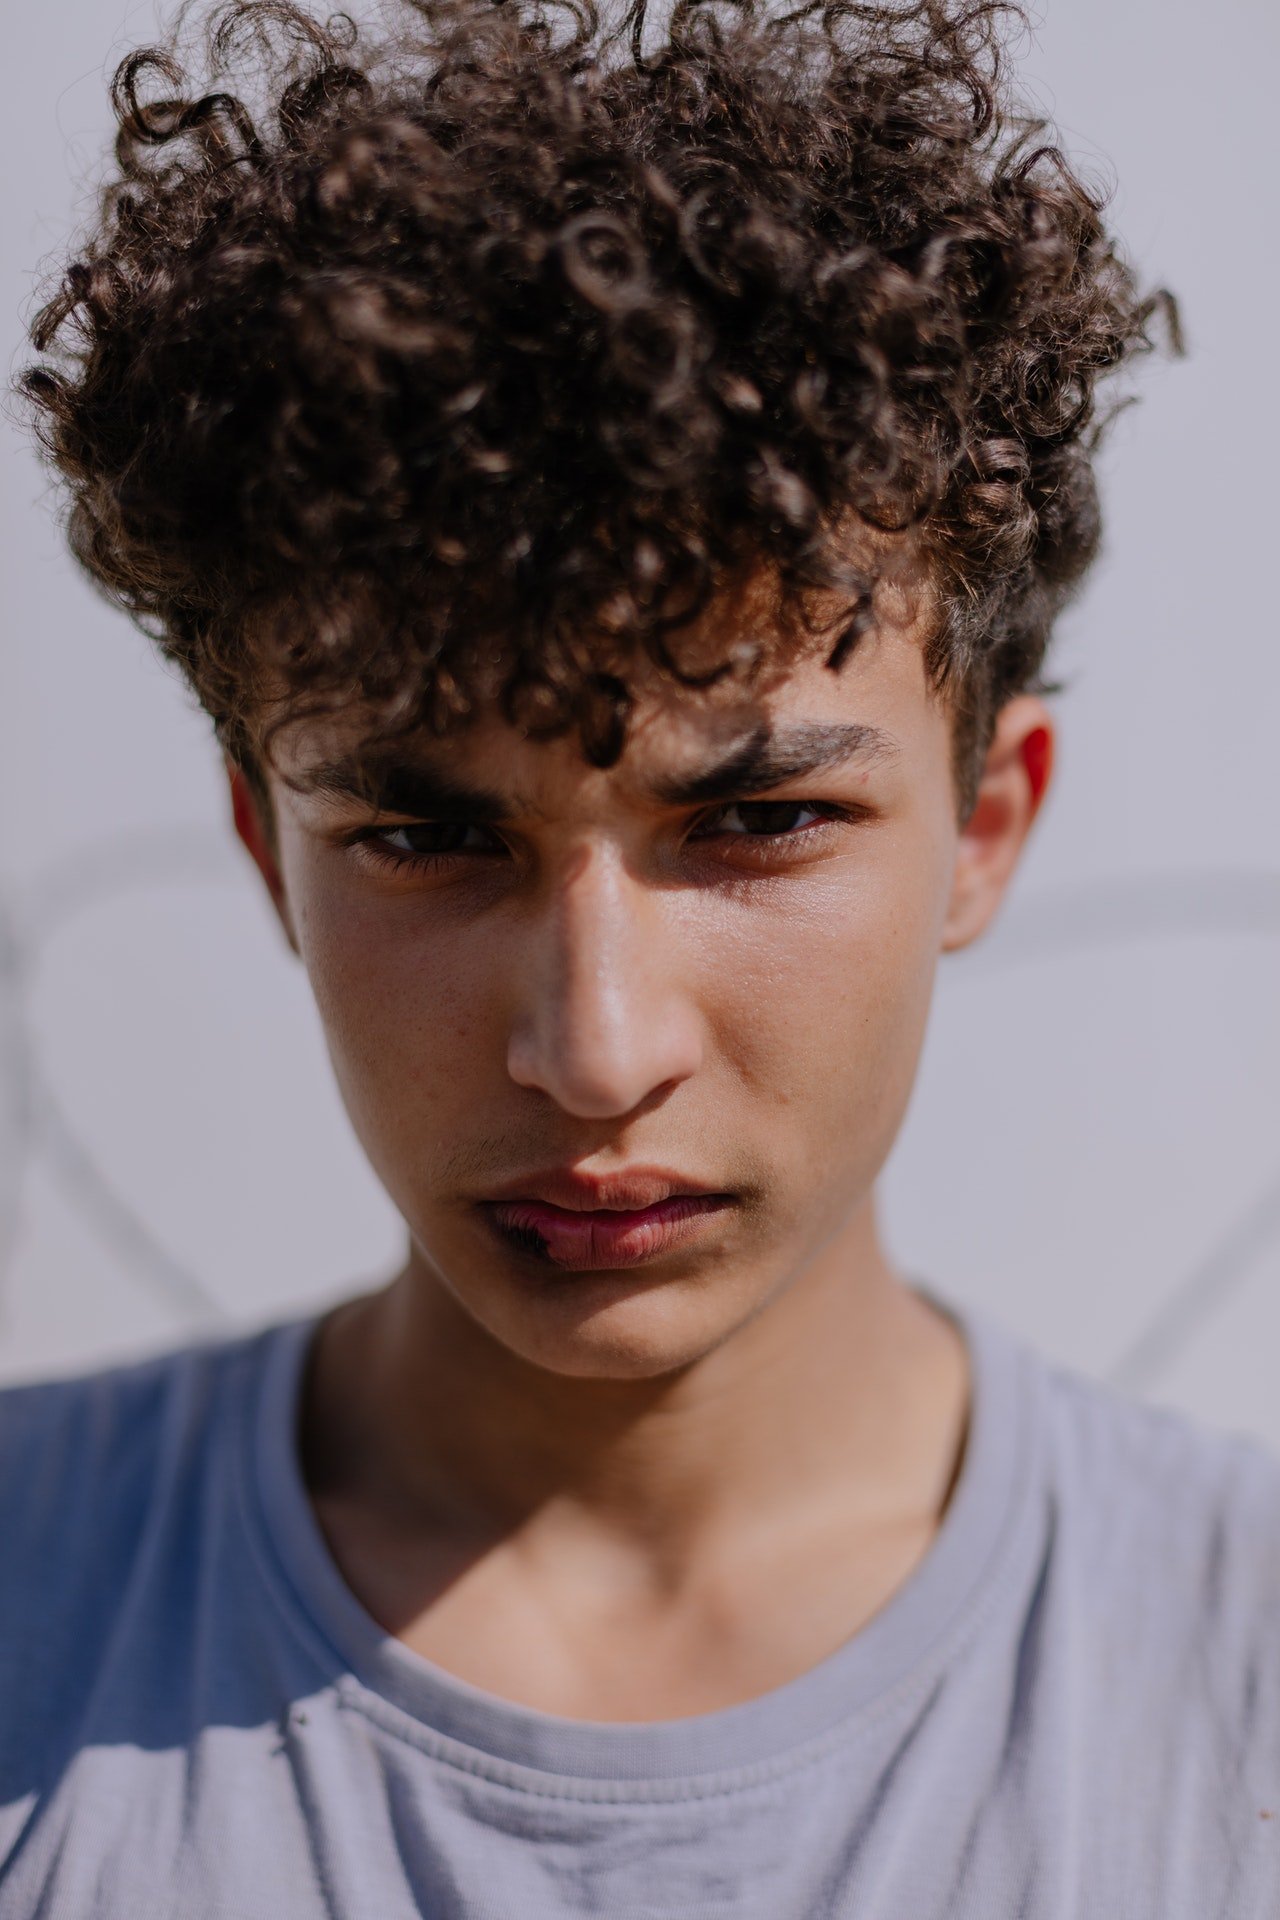 Un adolescente con rostro serio. | Foto: Pexels